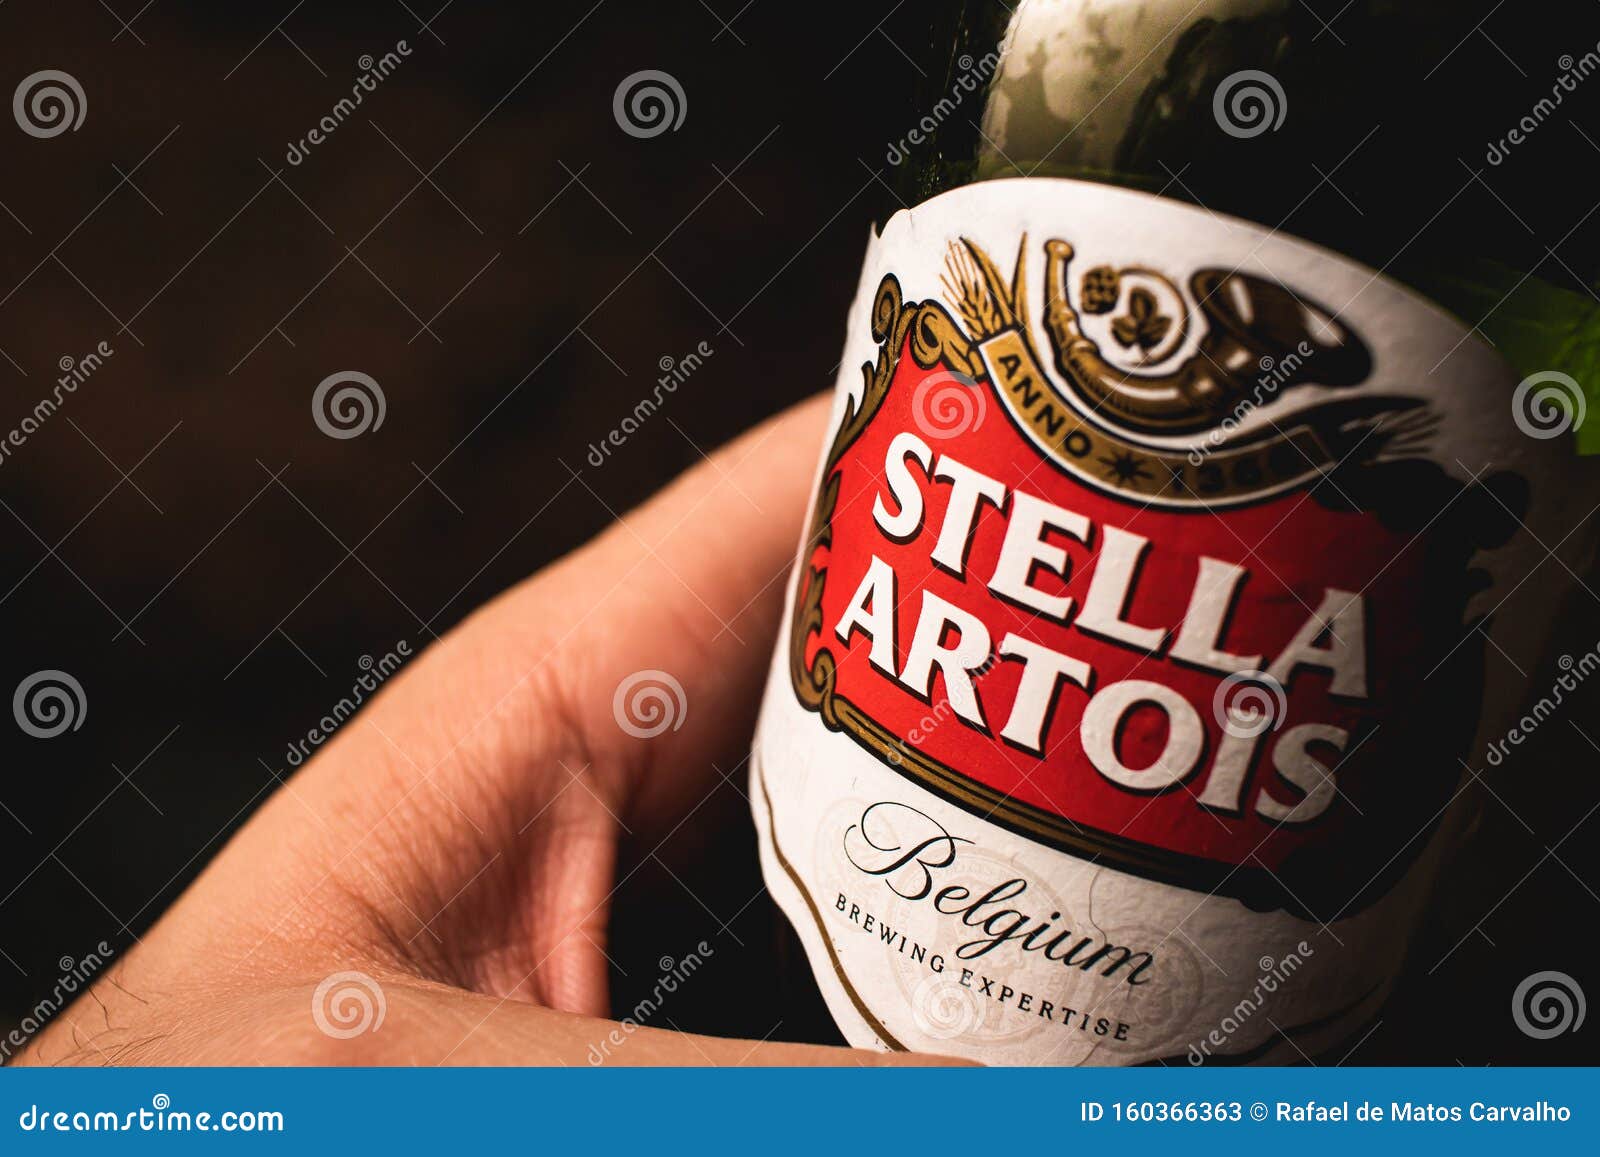 Featured image of post Stella Artois Fotos De Fake Tomando Cerveja Obtenha um segundo v deo stock com 25 025 segundos de leuven stella artois brewery belgium a 29 97fps